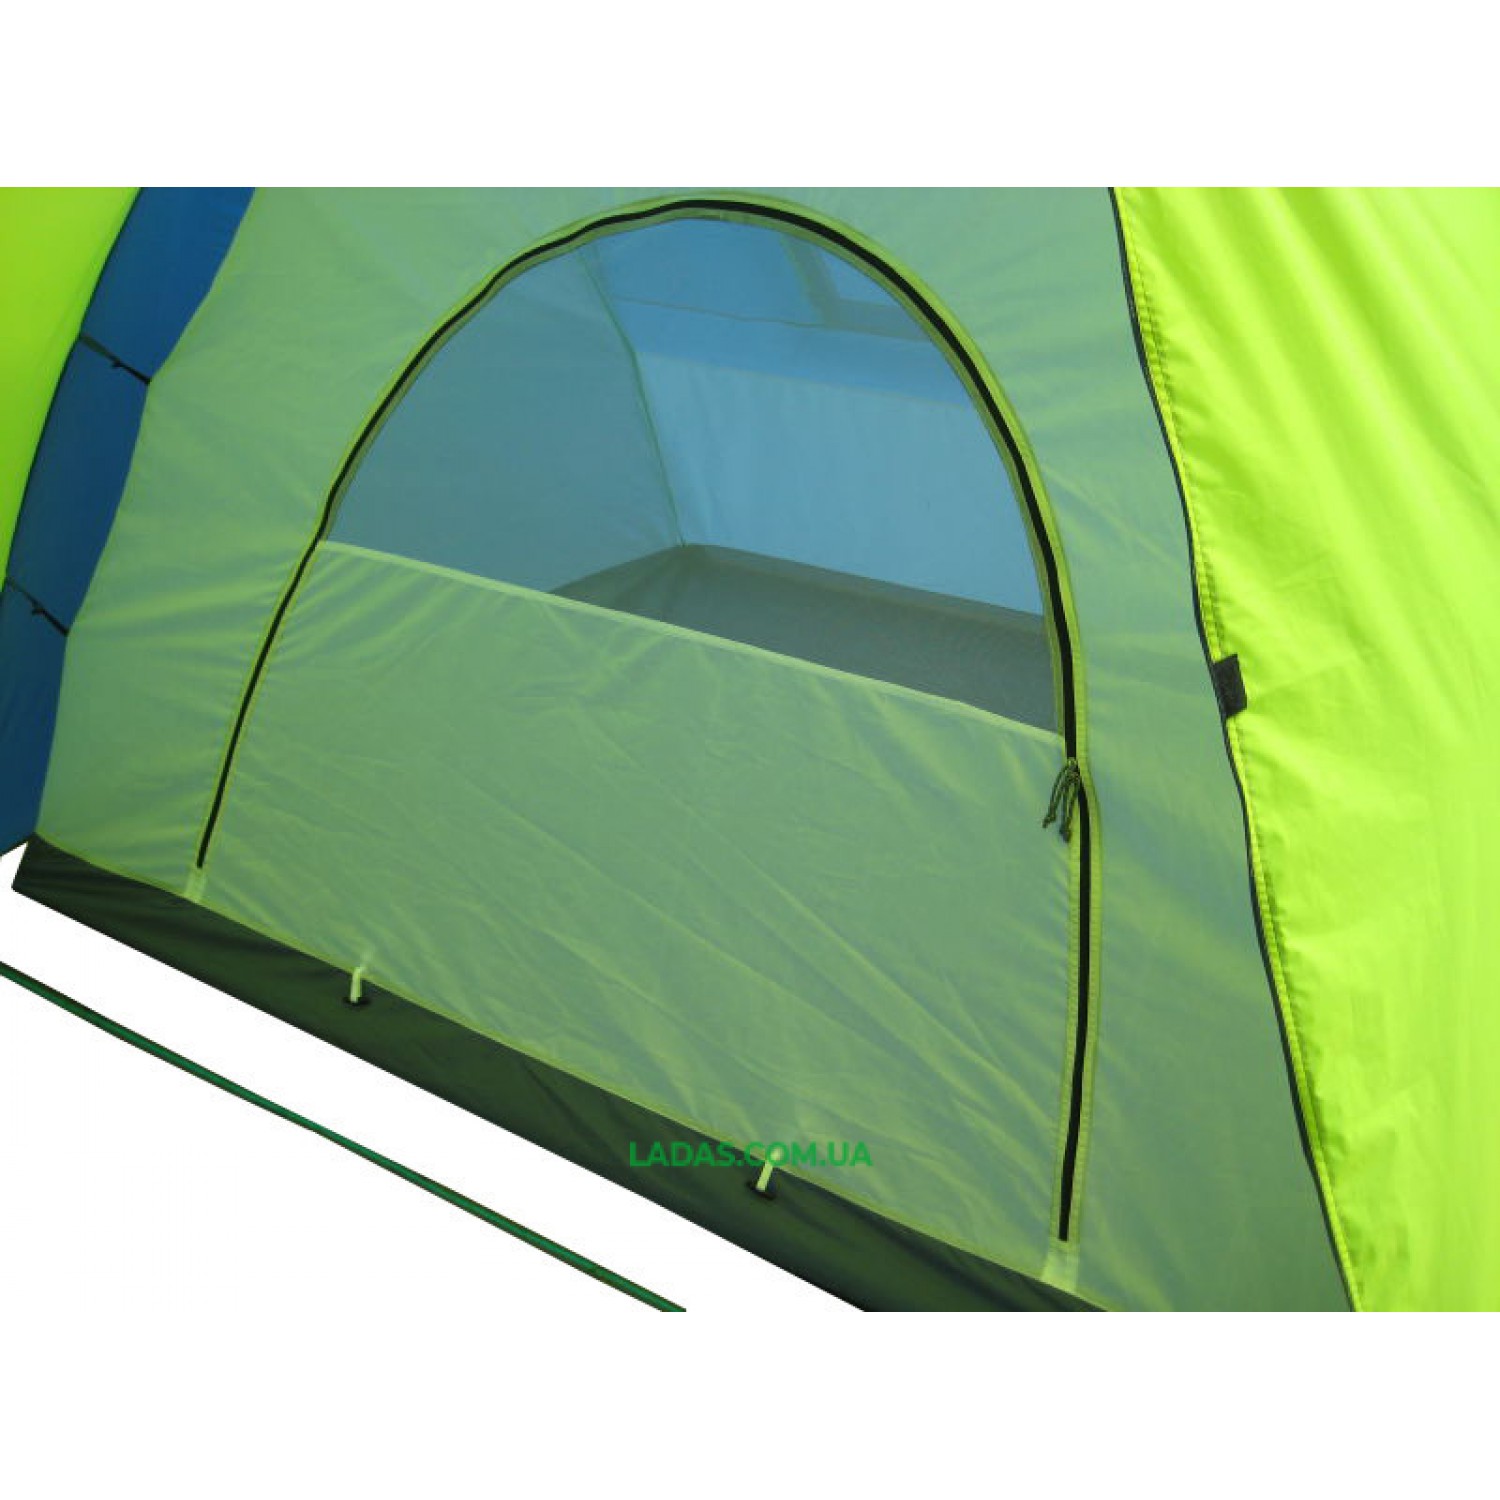 Шестиместная двухкомнатная палатка Green Camp 1002